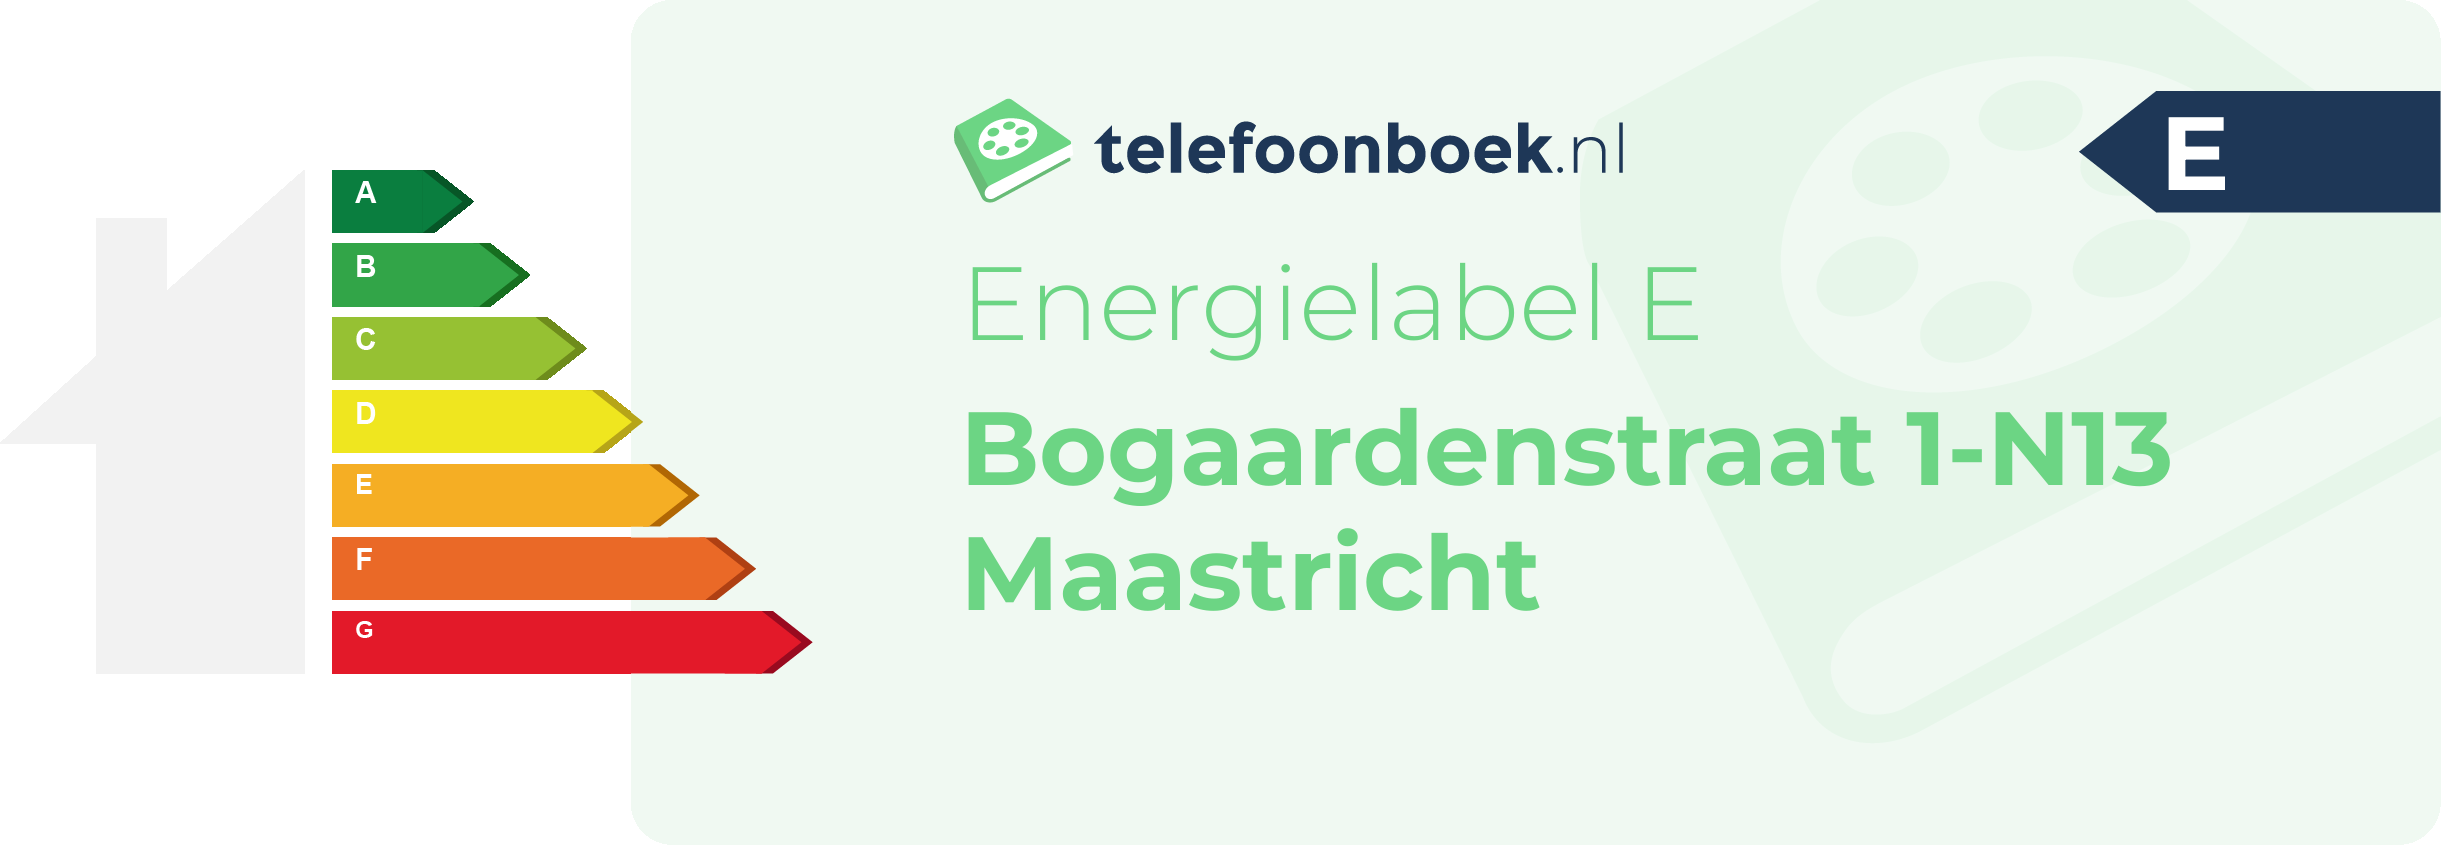 Energielabel Bogaardenstraat 1-N13 Maastricht